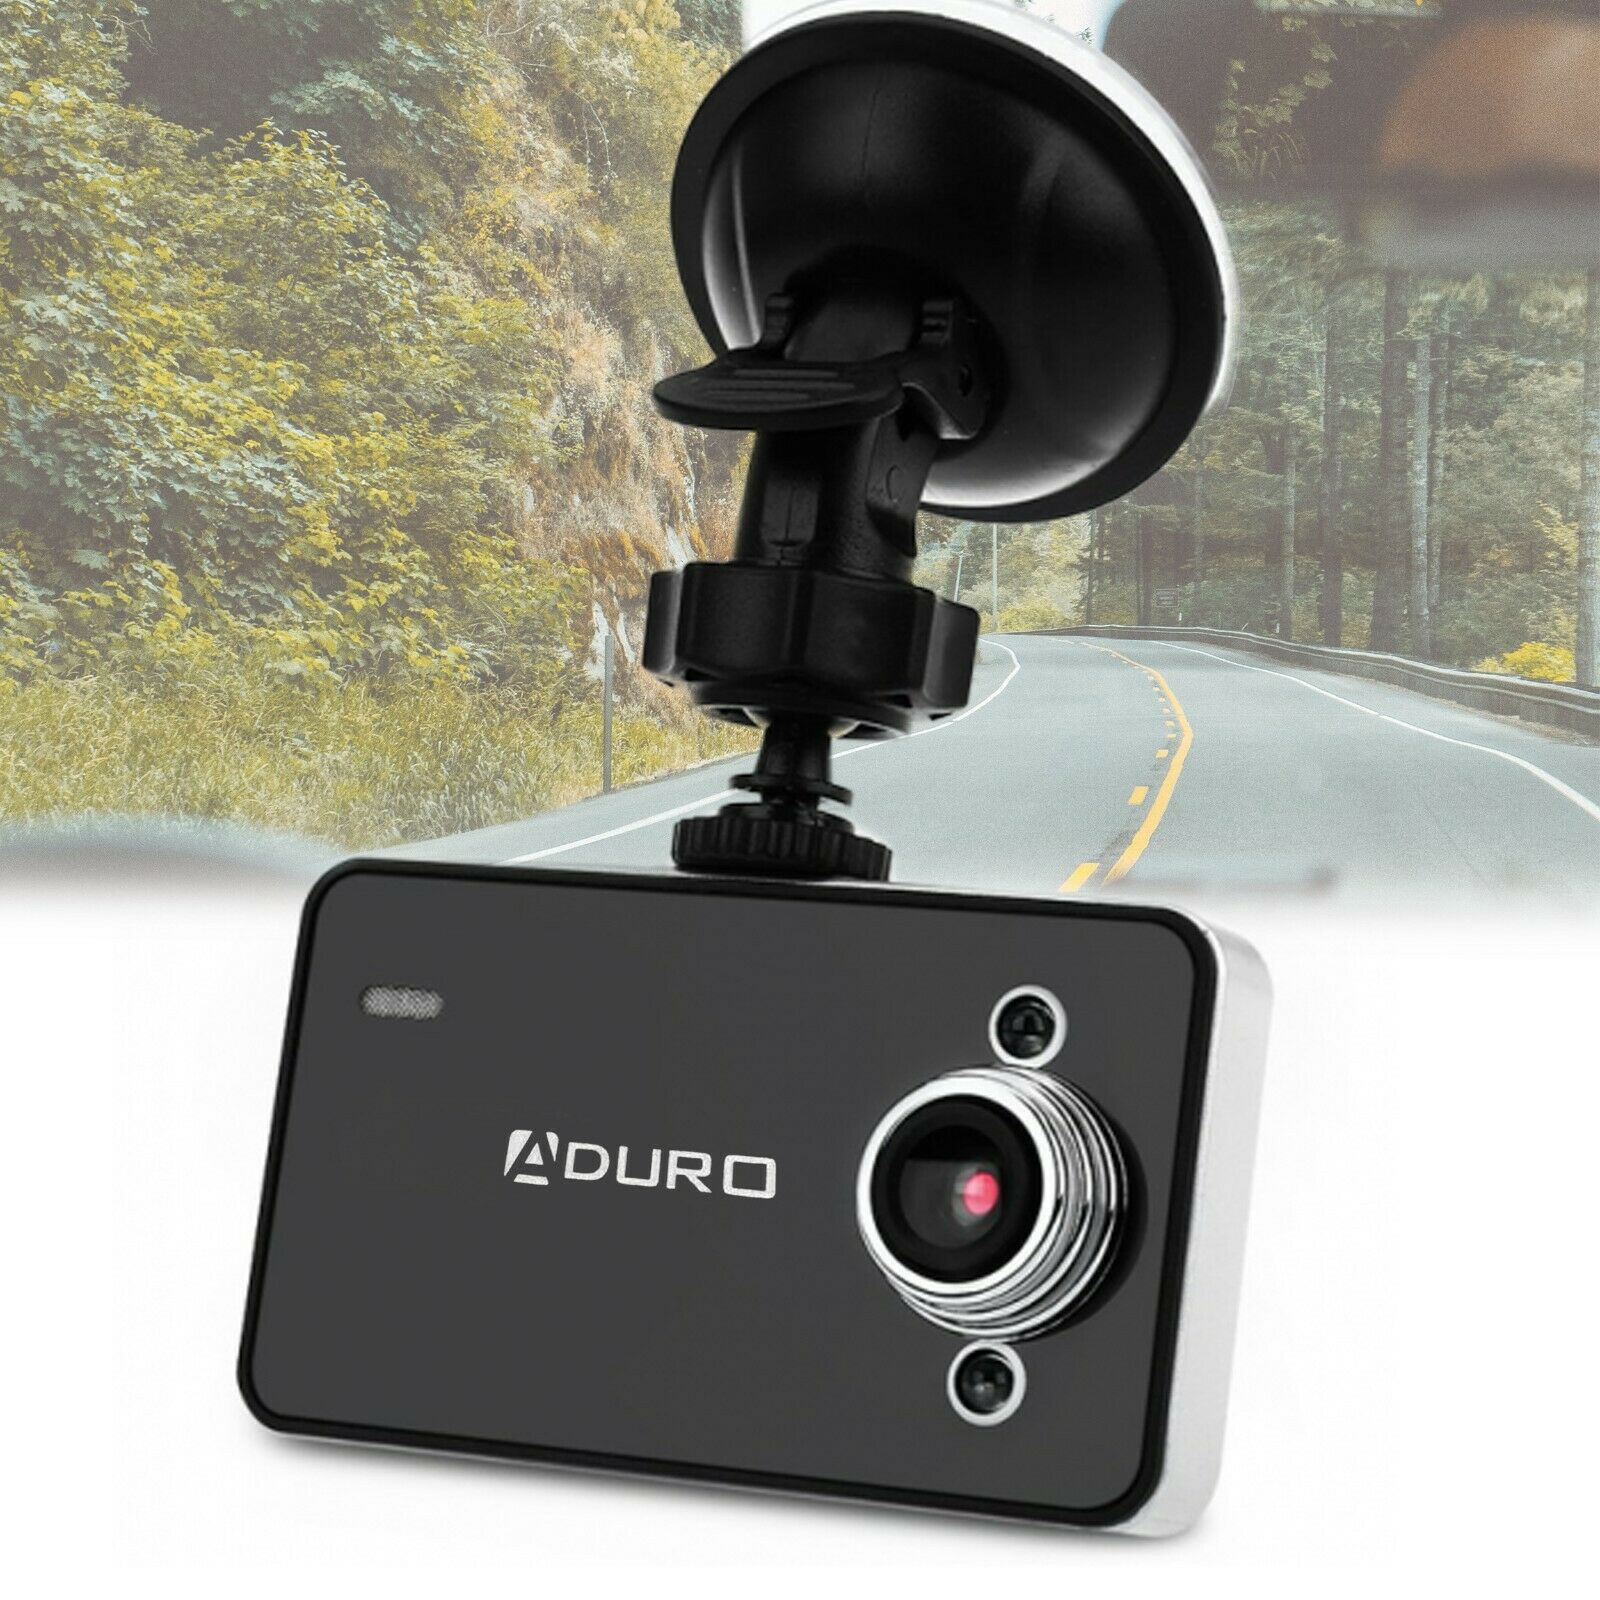 Aduro U-drive Pro Hd Dvr Dash Camera Dash Cam Video Recorder Auto Car Recording